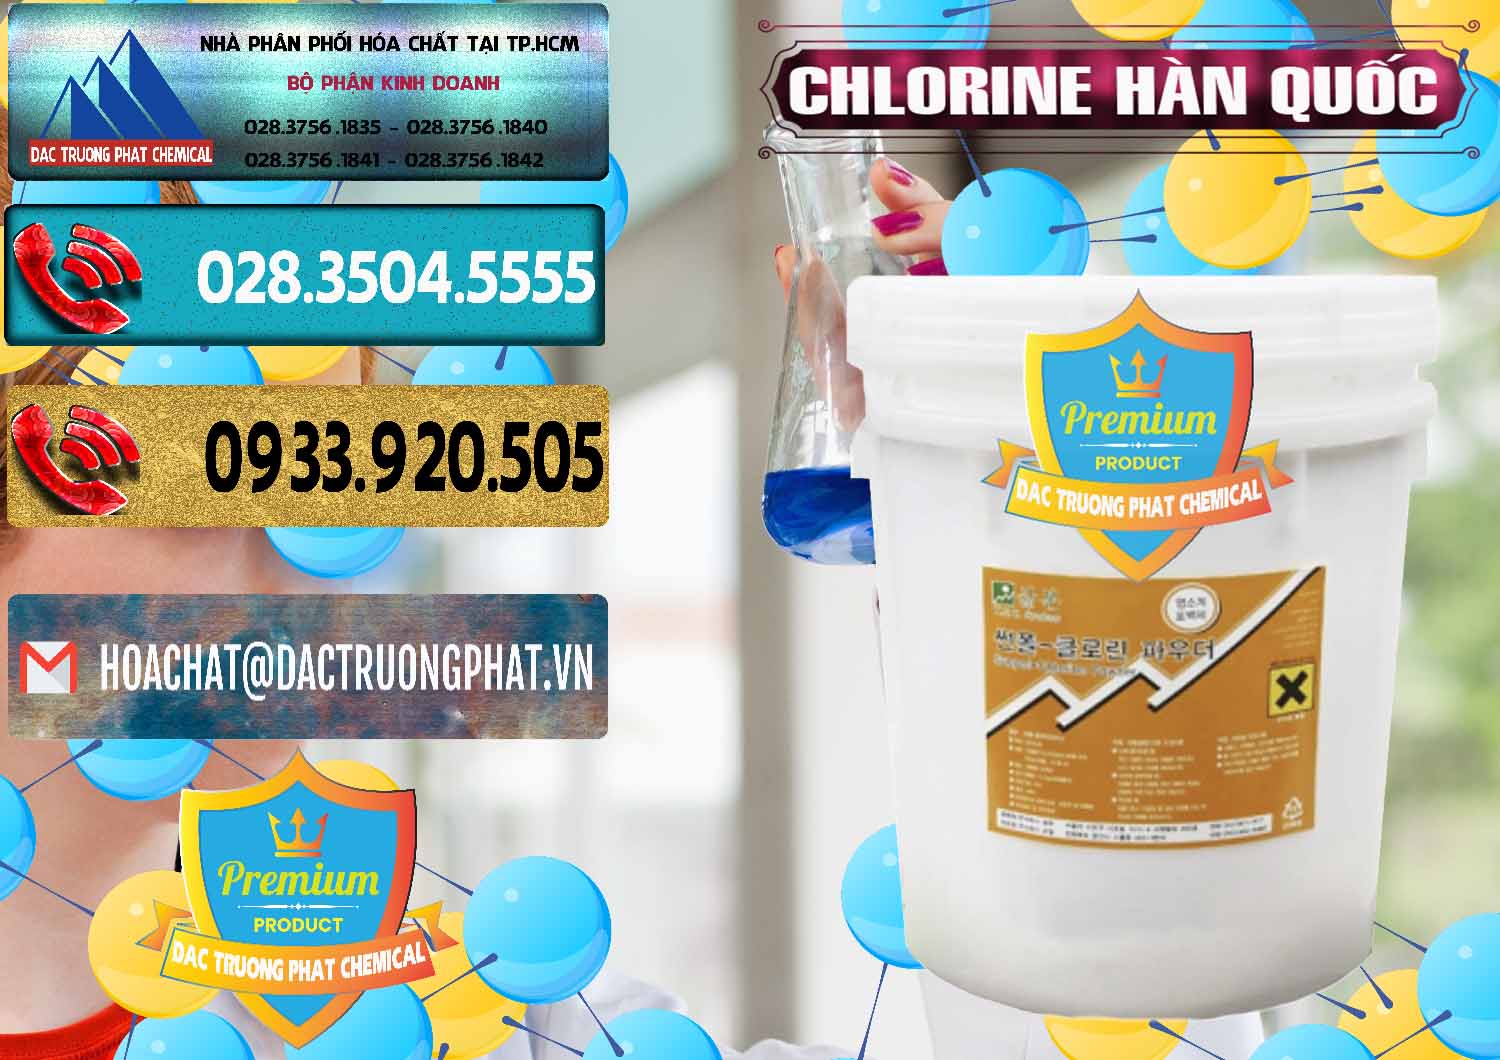 Nơi chuyên bán và cung cấp Chlorine – Clorin 70% Hàn Quốc Korea - 0345 - Công ty kinh doanh & phân phối hóa chất tại TP.HCM - hoachatdetnhuom.com